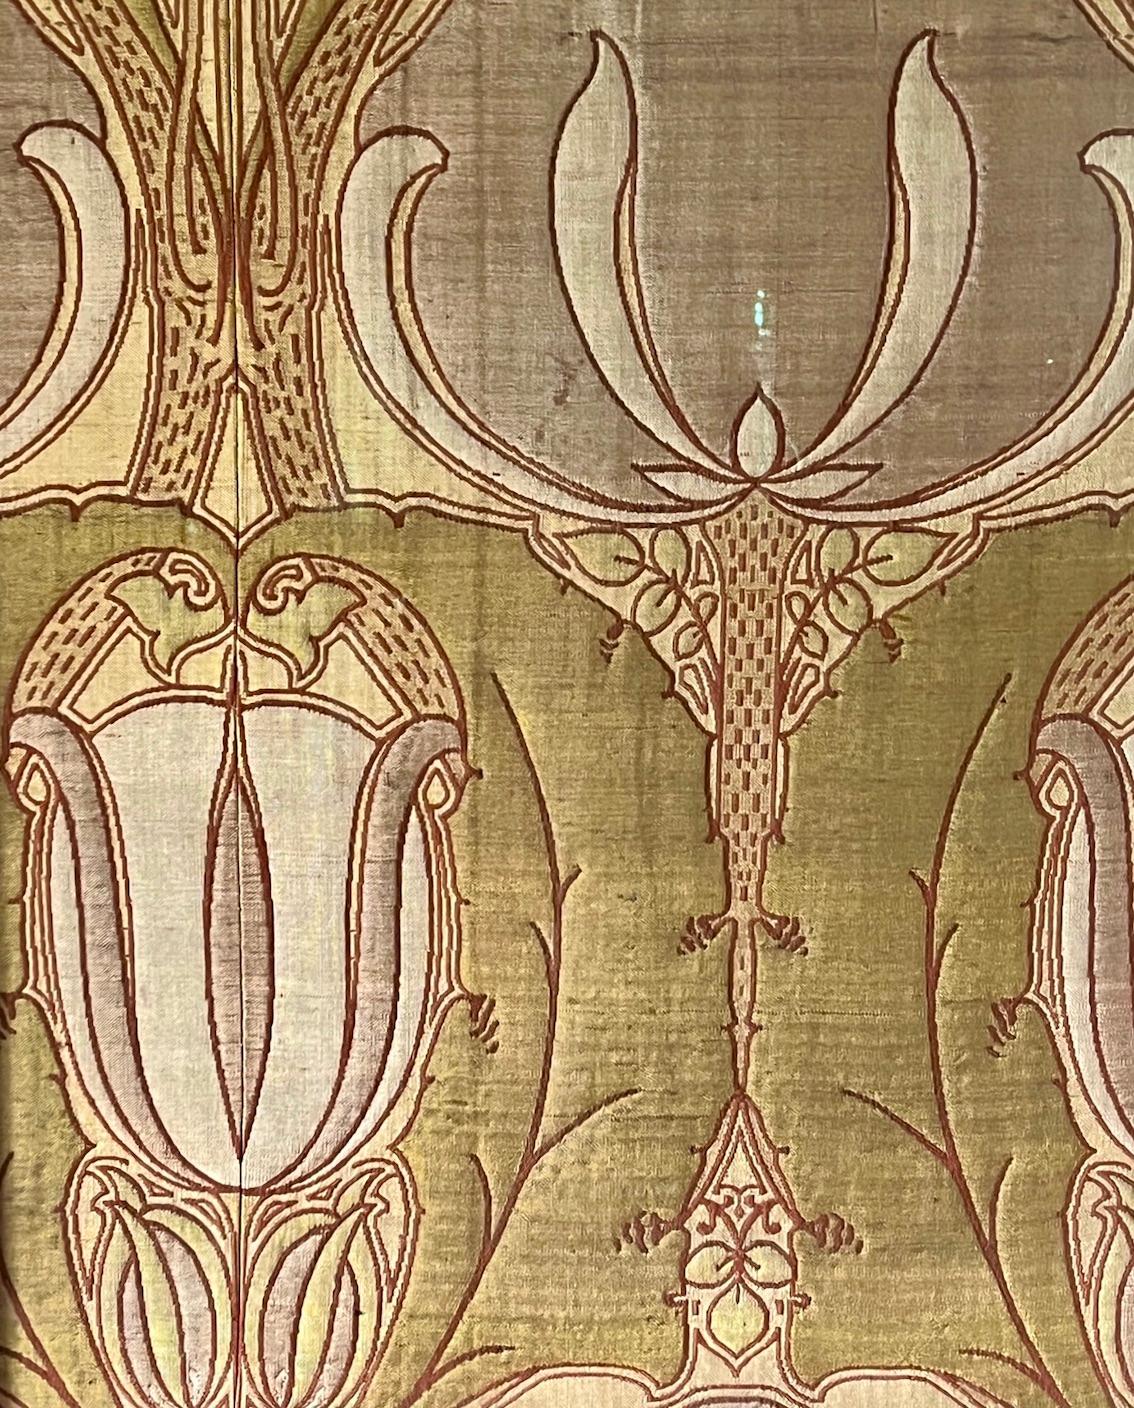 Dies ist eine wunderbare seltene Arts & Crafts gerahmt Textil

Jacquardgewebte Seide, Wolle und Baumwolle

Es wurde von Alexander Morton & Co gewebt.

CIRCA 1900

C.F.A Voysey zugeschriebener Entwurf

Höhe 106cm Breite 70cm

Ungerahmt Höhe 98cm